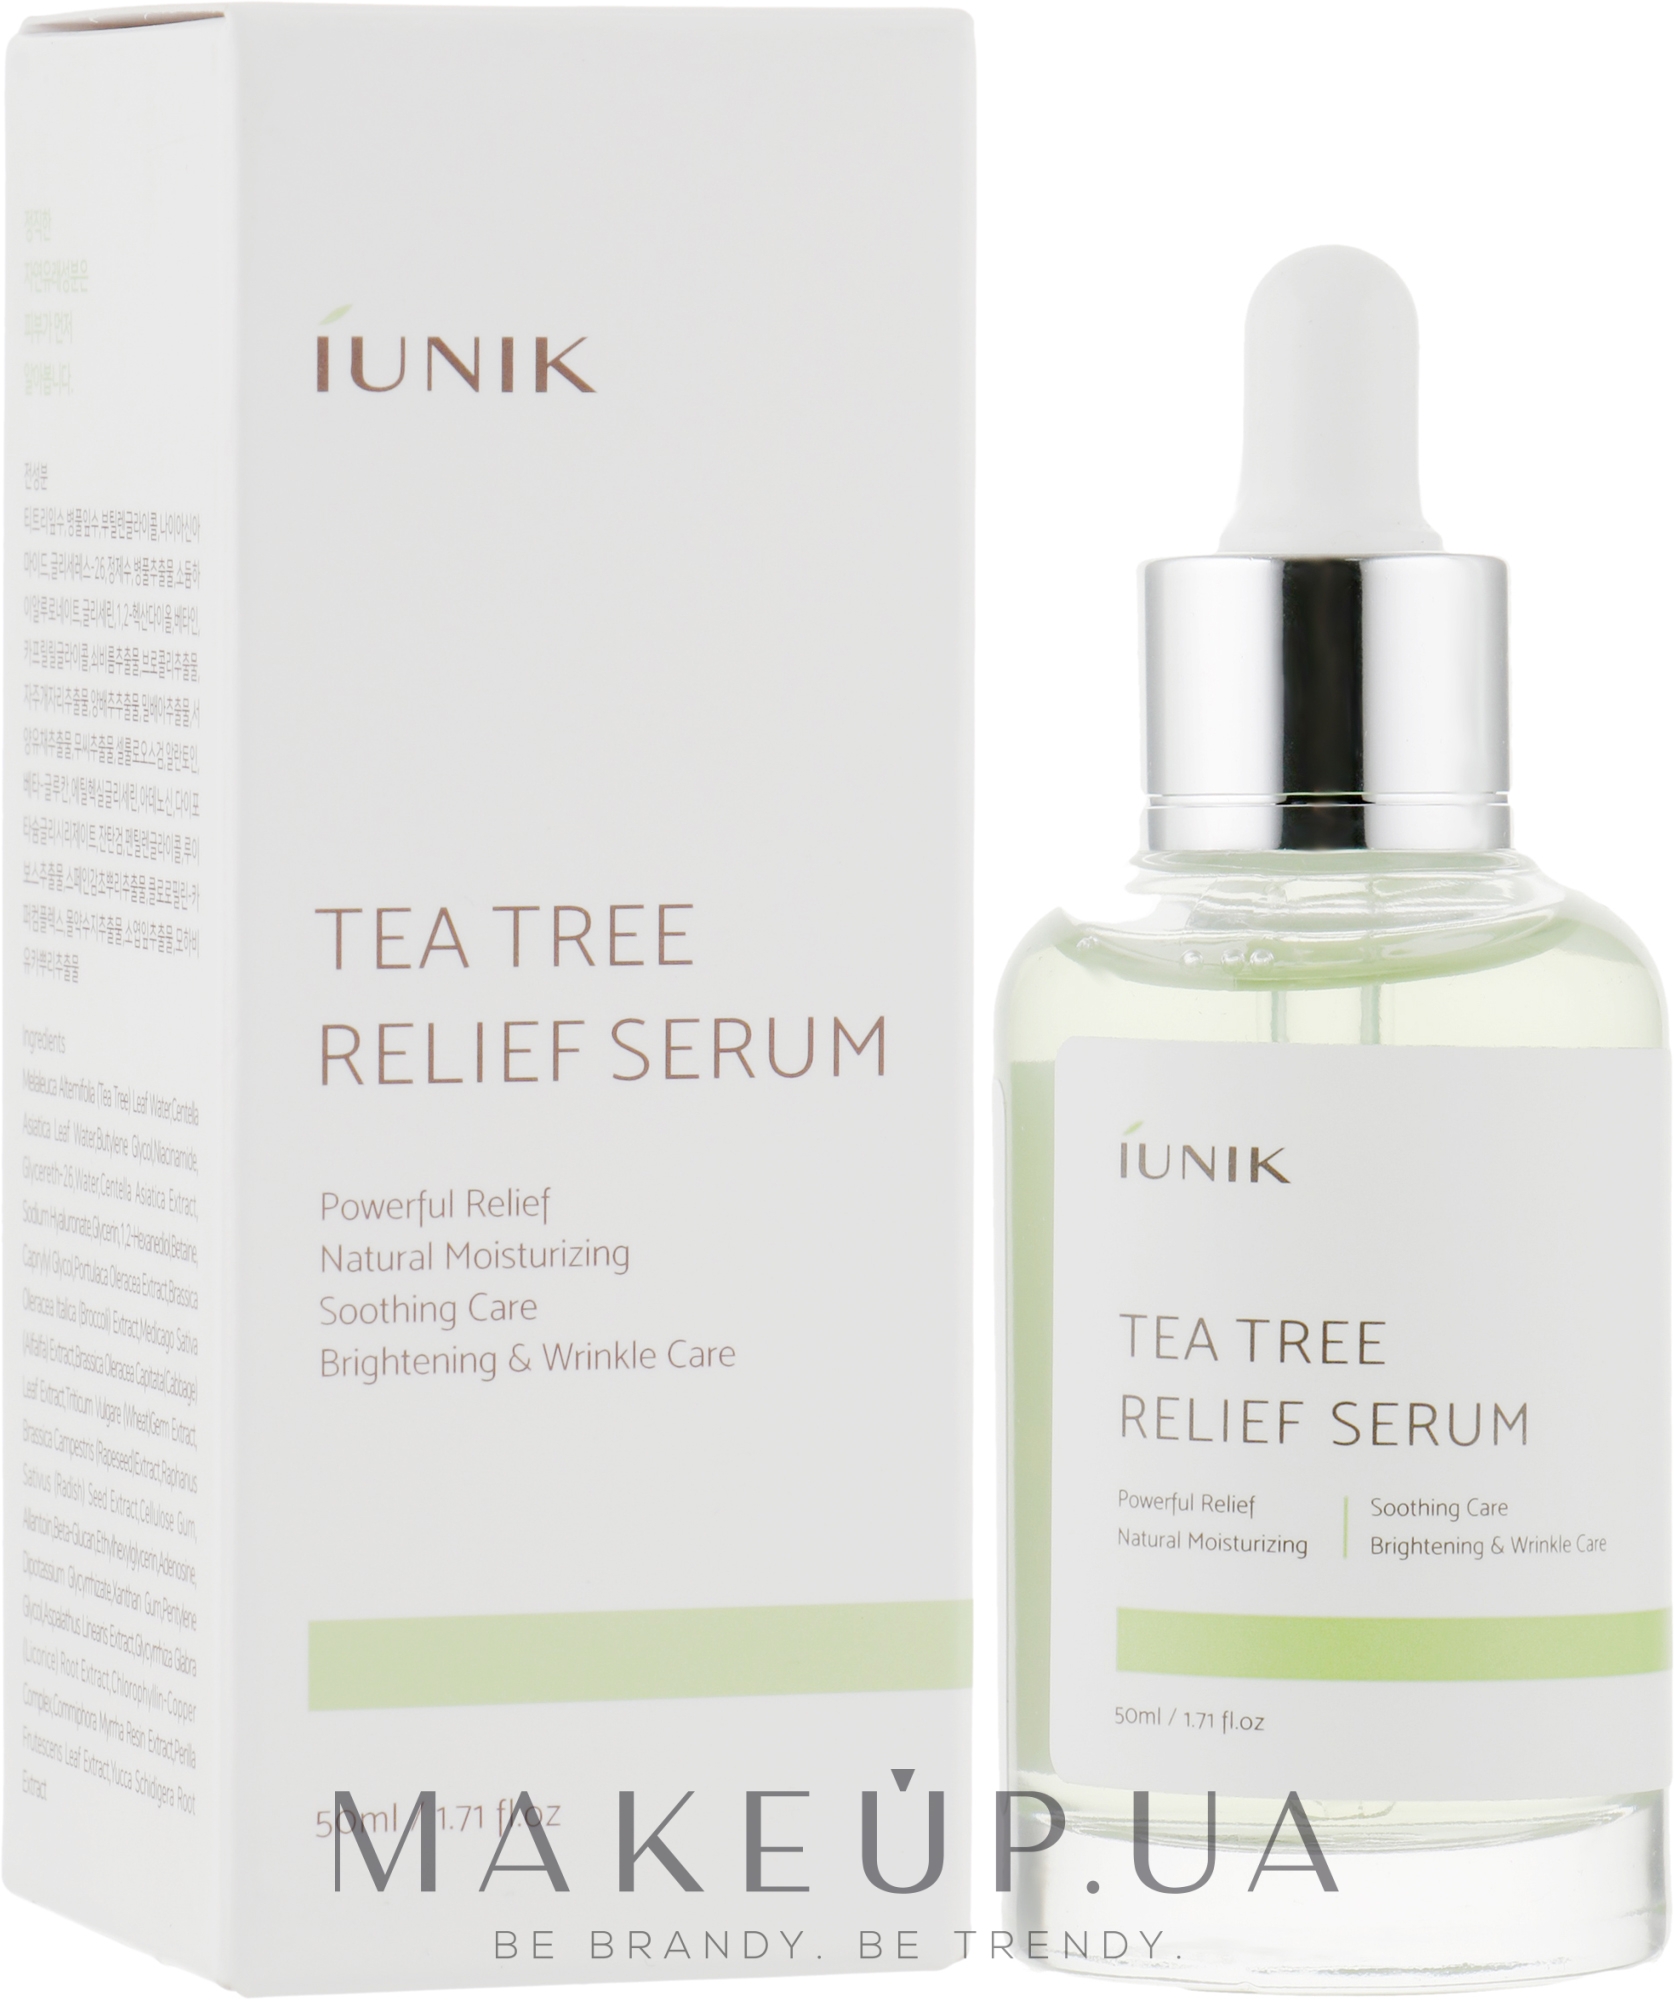 Сыворотка с чайным деревом. IUNIK Tea Tree Serum. Unik Tea Tree Relief Serum. Сыворотка для лица Tea Tree. Сыворотка Корея IUNIK линейки.